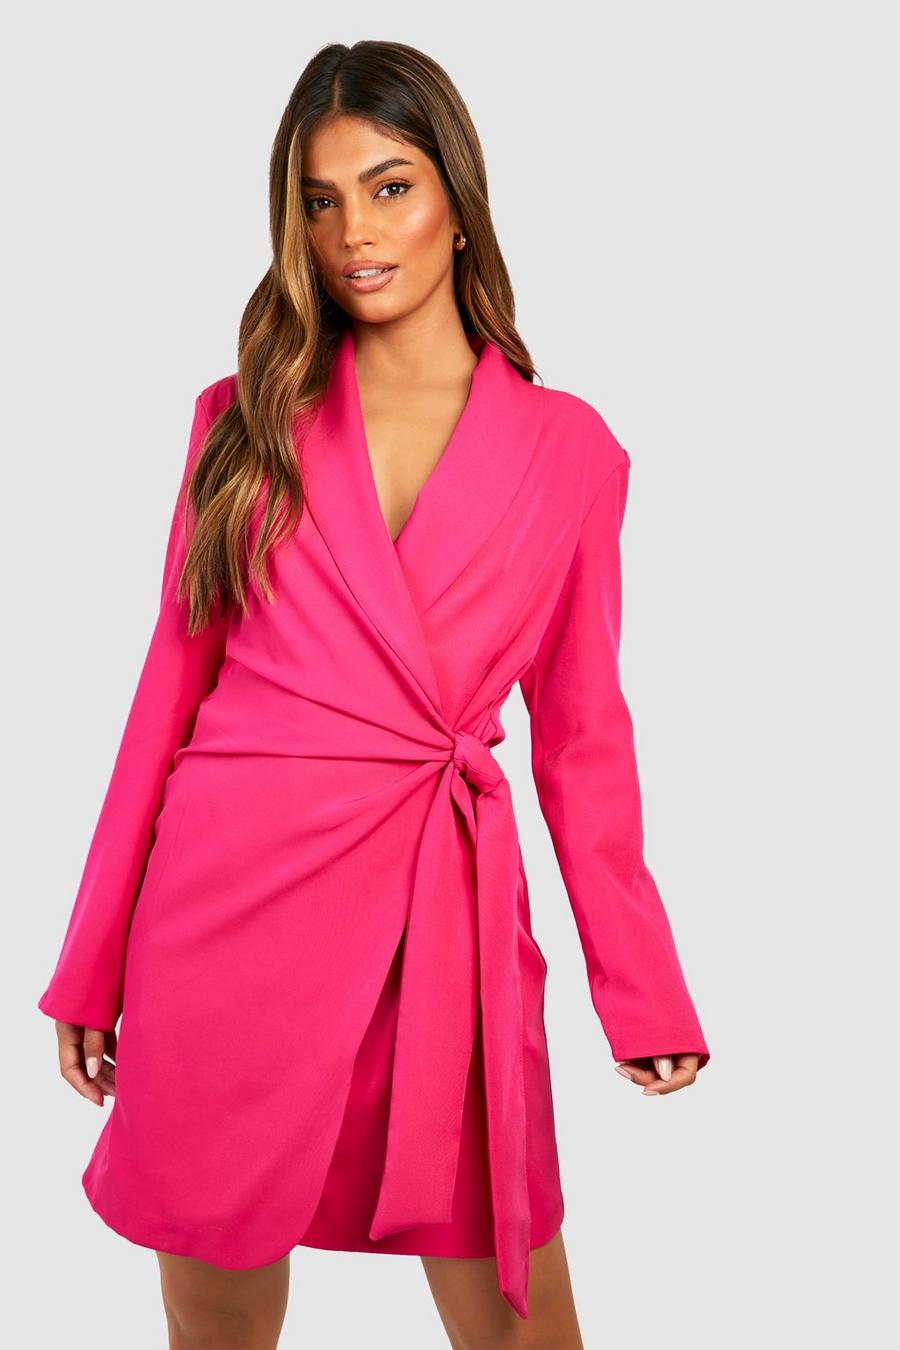 Hot pink Tie Waist Tailored Blazer Dress